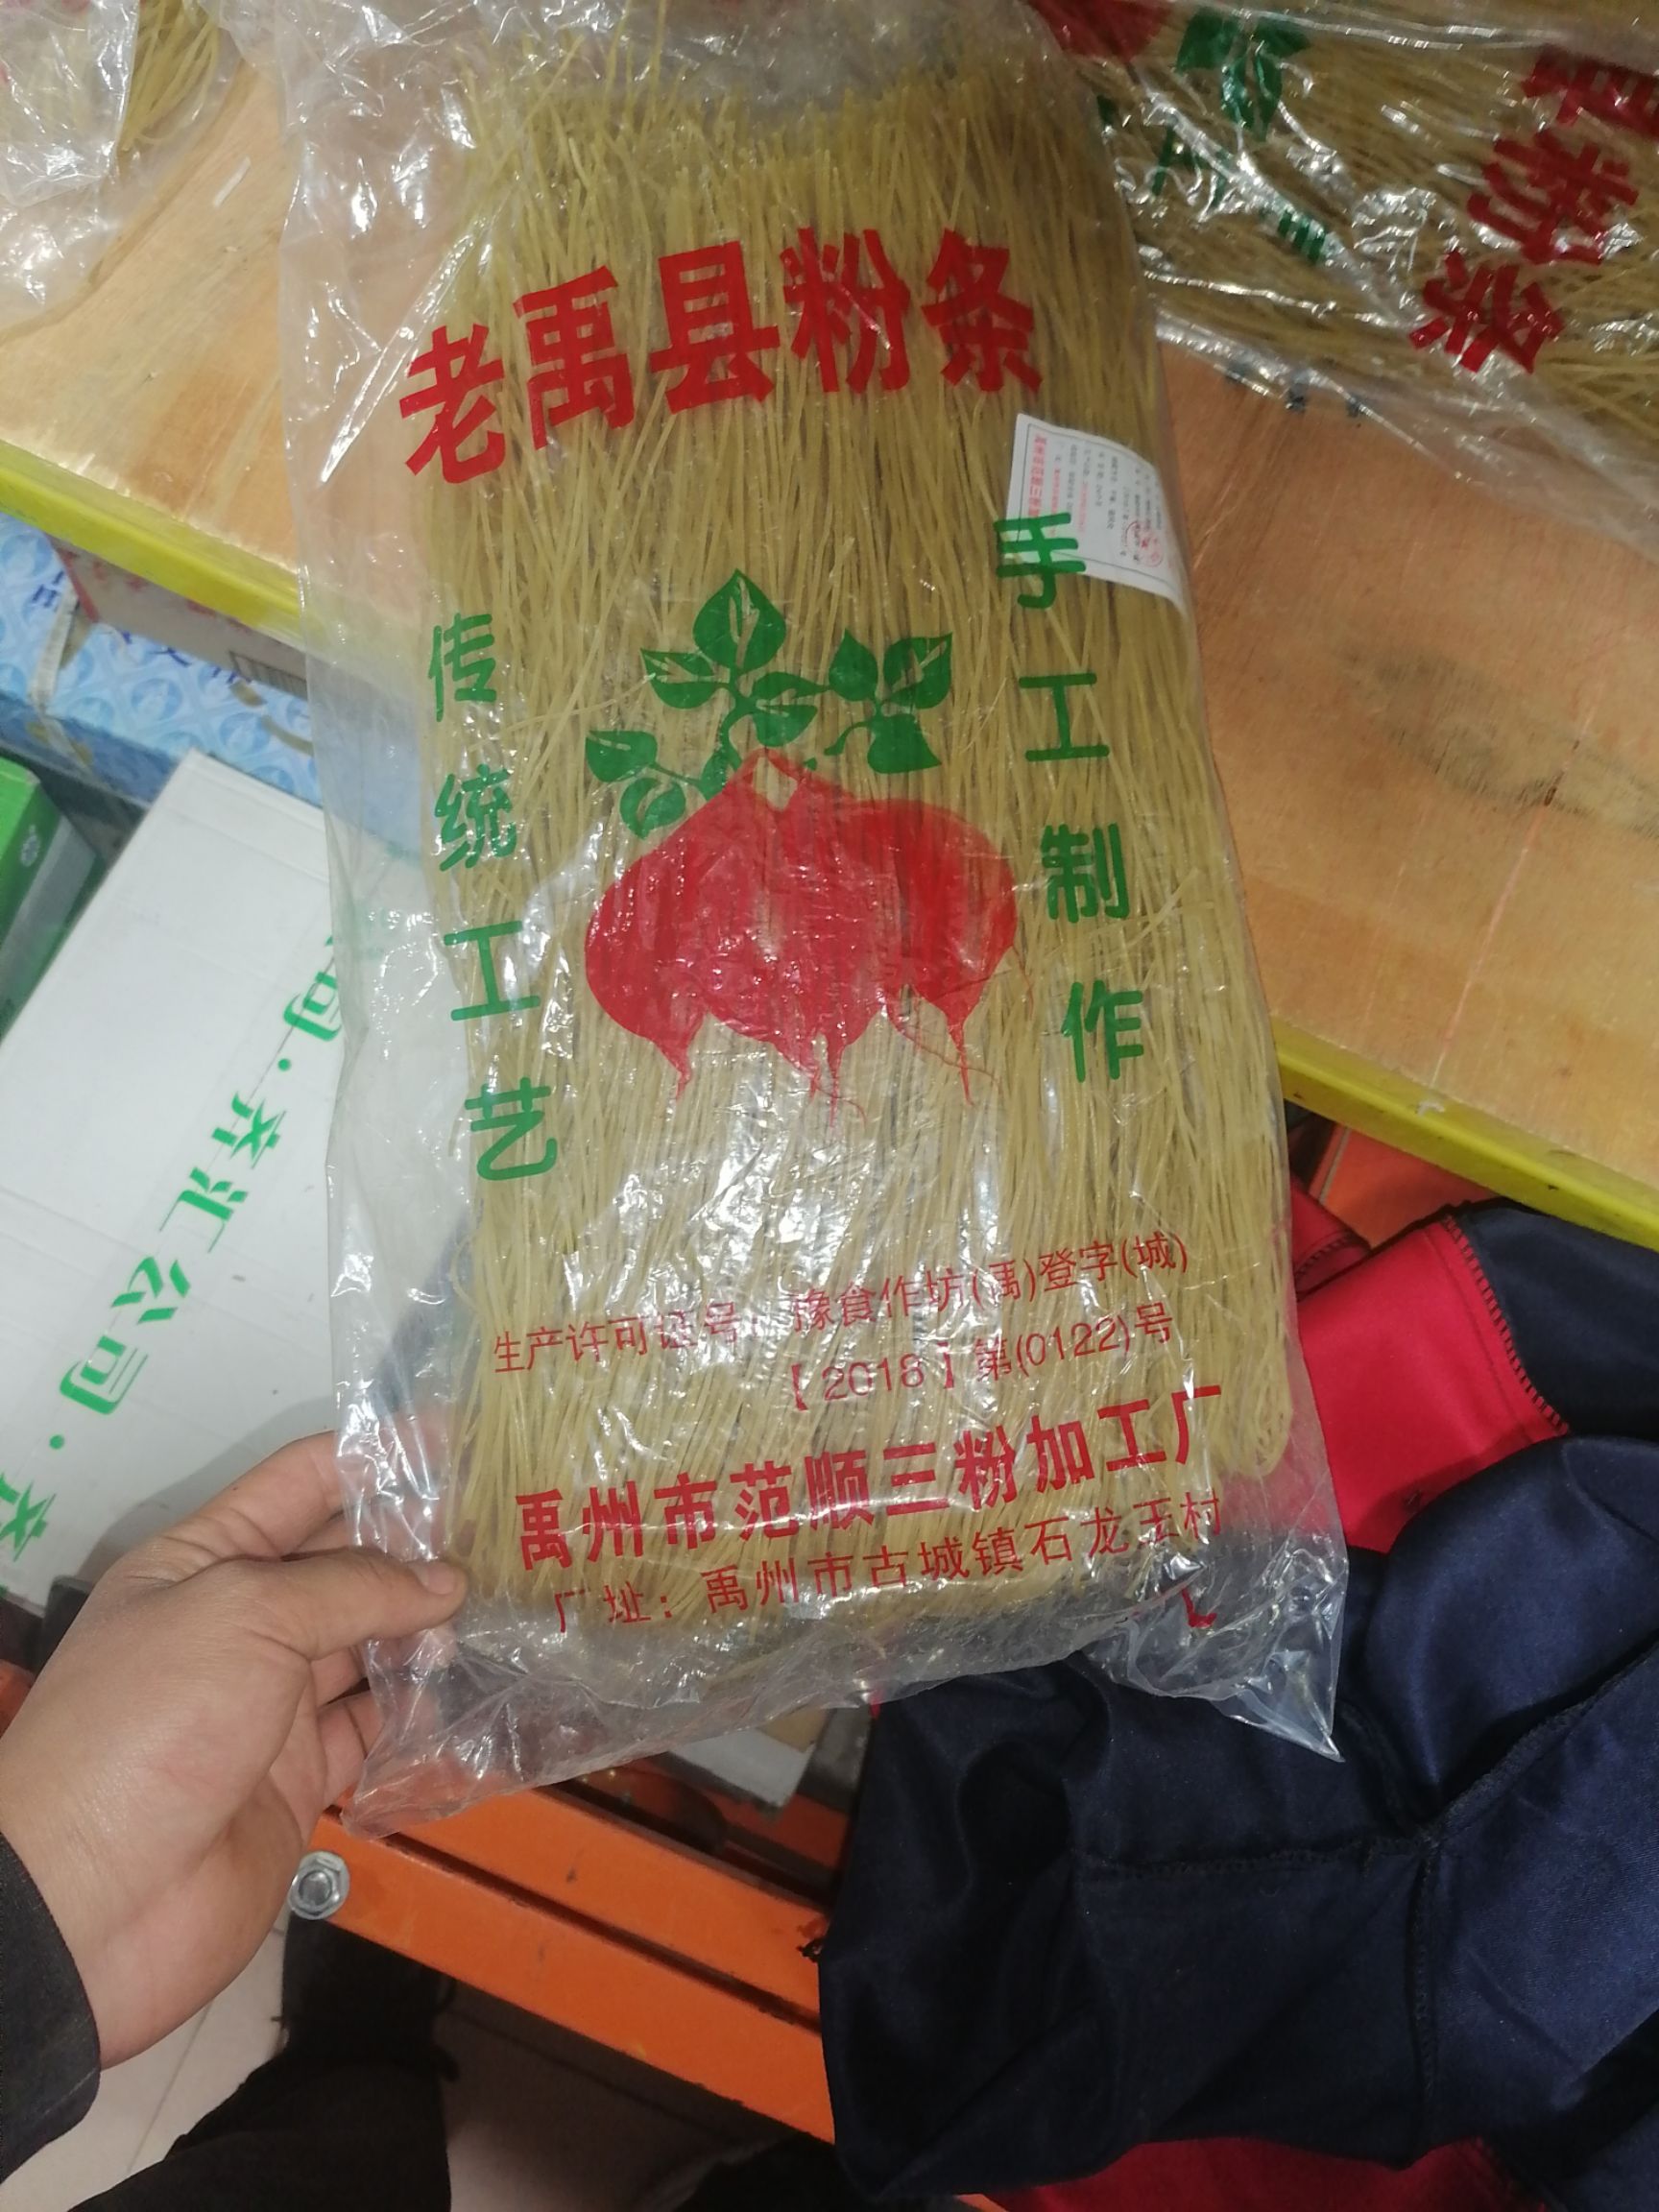 品种名:红薯粉 品种名:红薯粉 货品包装:捆装 货品形态:圆粉